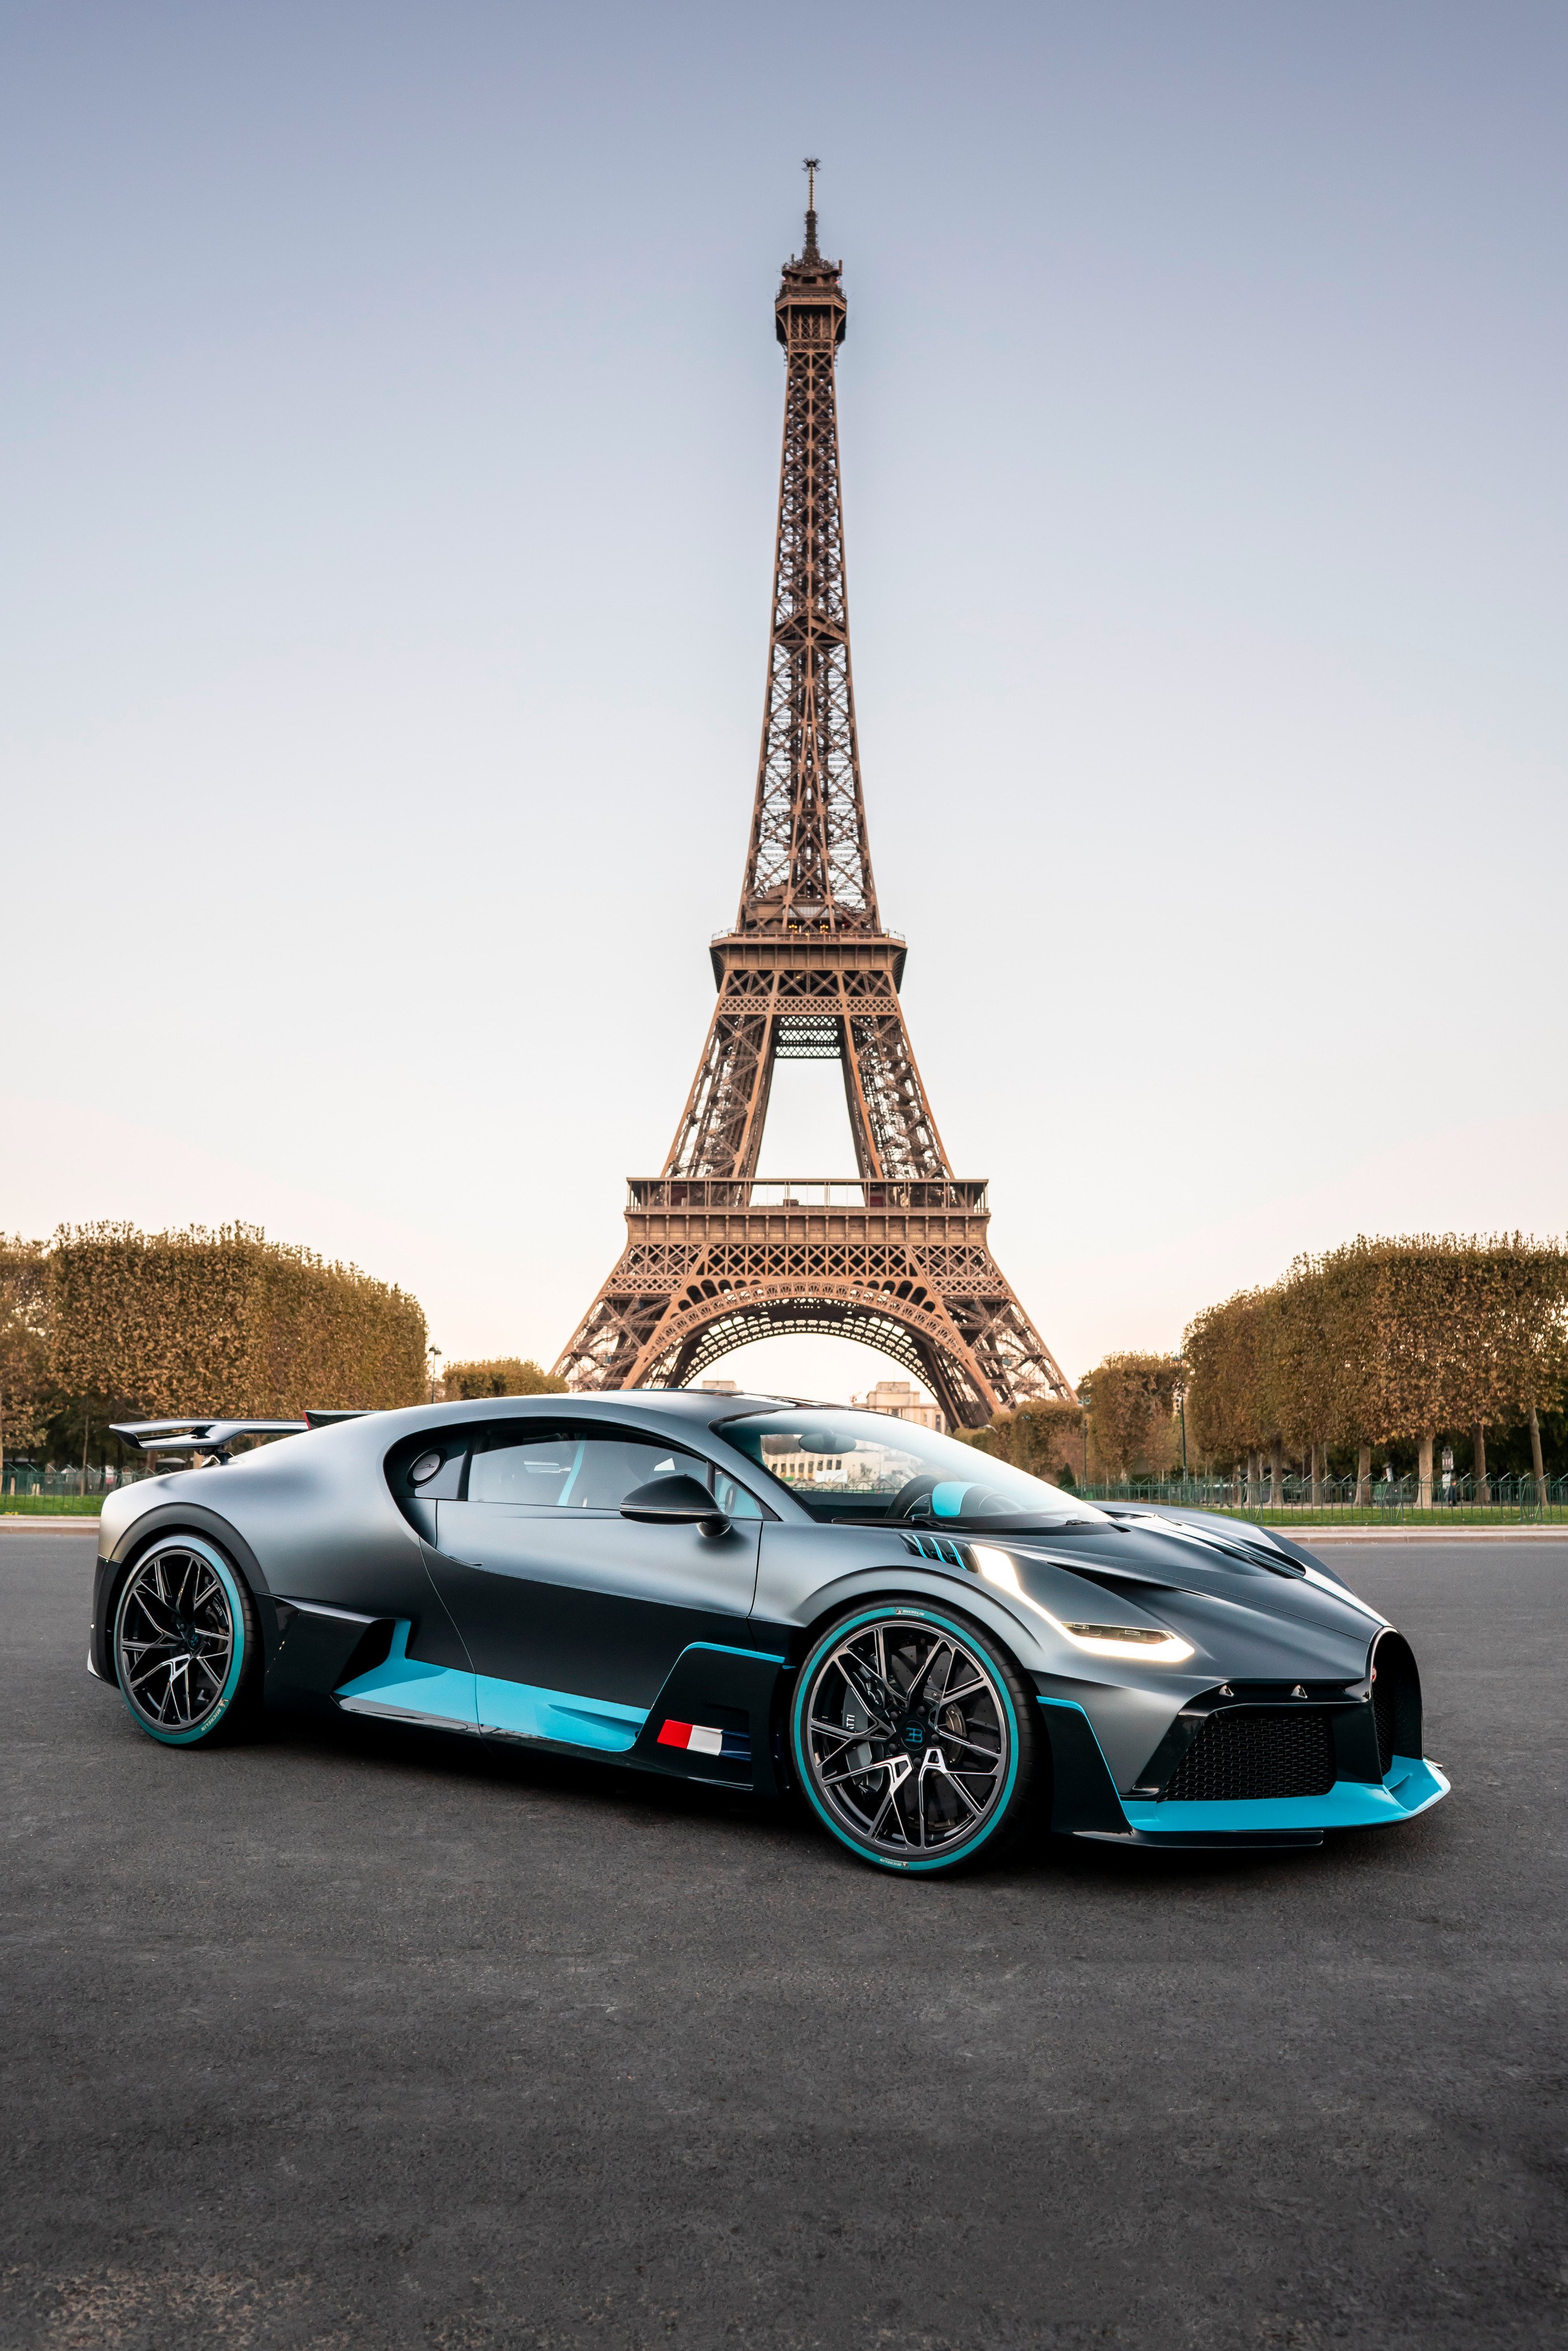 Đừng bỏ lỡ cơ hội được chiêm ngưỡng những thiết kế độc đáo của Bugatti tại Paris - thành phố của niềm đam mê và sáng tạo. Với những chi tiết tinh tế và đầy chất thơ, các mẫu xe của Bugatti sẽ khiến bạn phải \